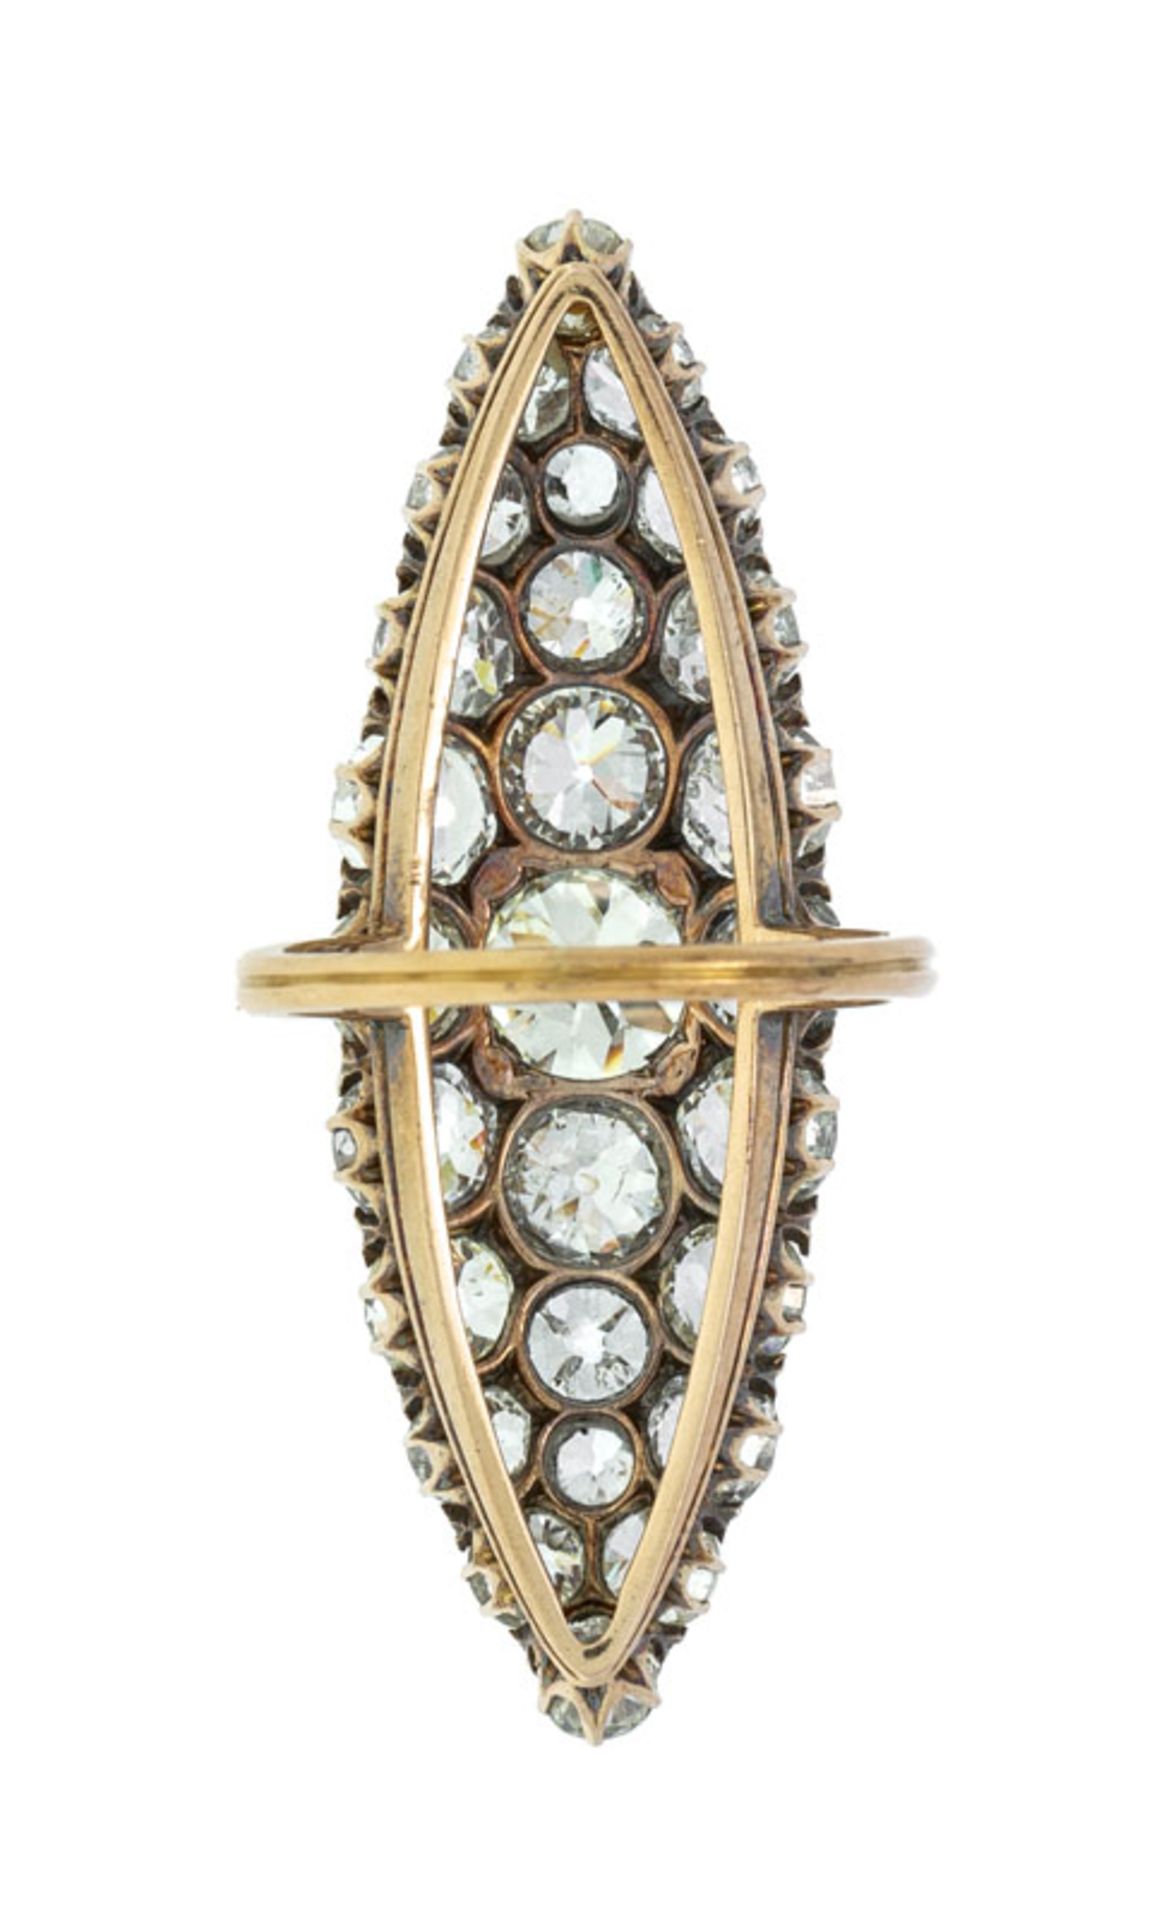 Bague marquise fin XIXe s., or et argent pavée de diamants taille old european cut - Image 6 of 6